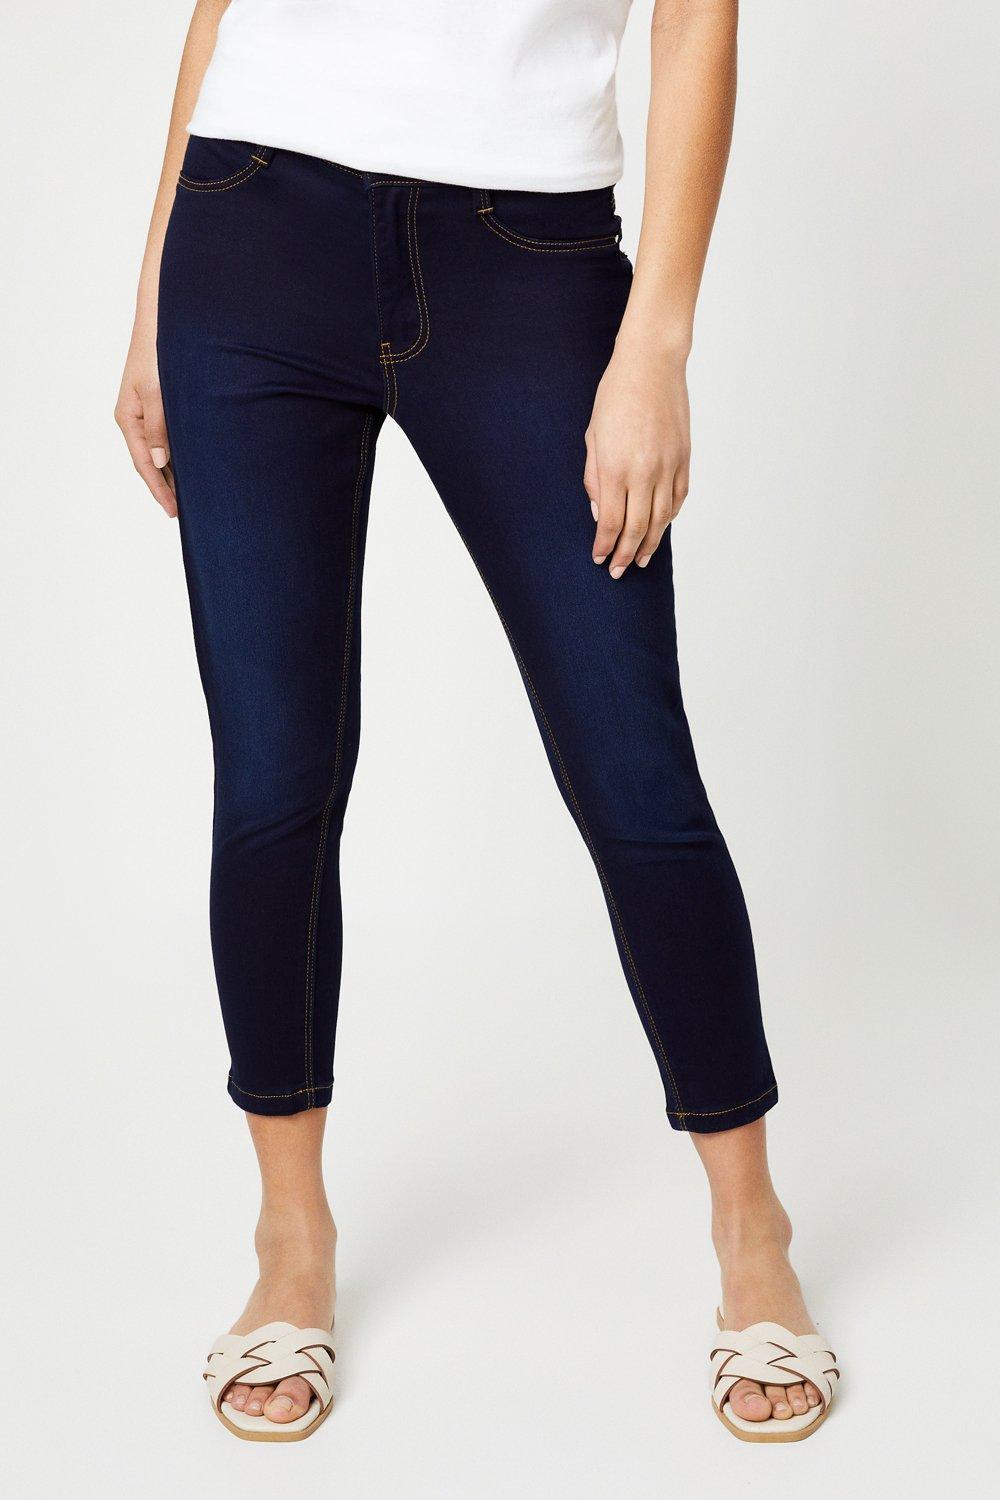 Women's Petite Skinny Ankle Grazer Jeans - indigo - 12